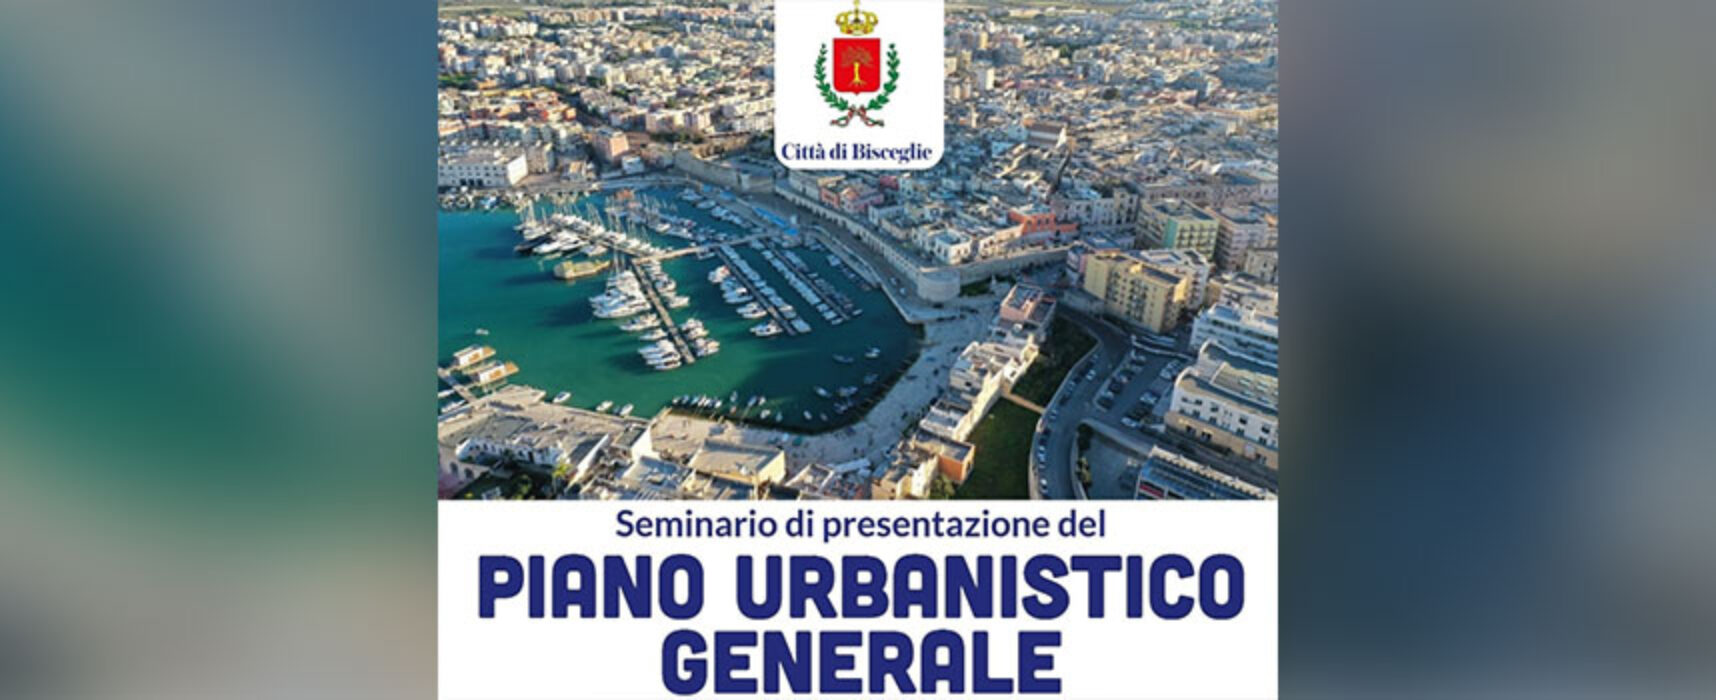 Bisceglie, oggi seminario di presentazione alla Città del Piano Urbanistico Generale